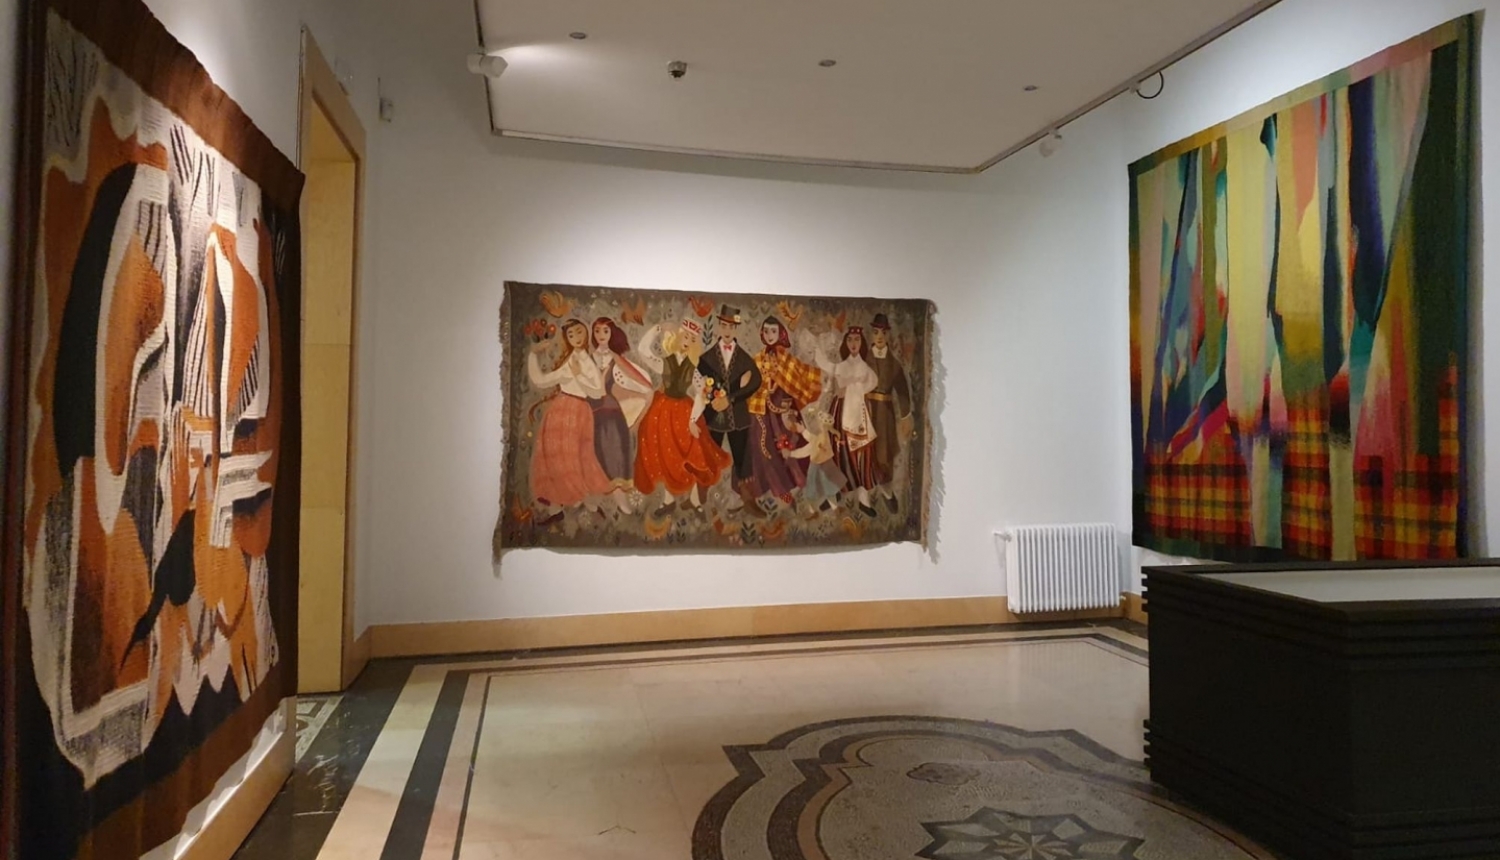 Izstāde “Tradicionālais un laikmetīgais | Latvijas tekstilmāksla” Nacionālajā dekoratīvās mākslas muzejā Madridē. 2021. Foto: Velta Raudzepa